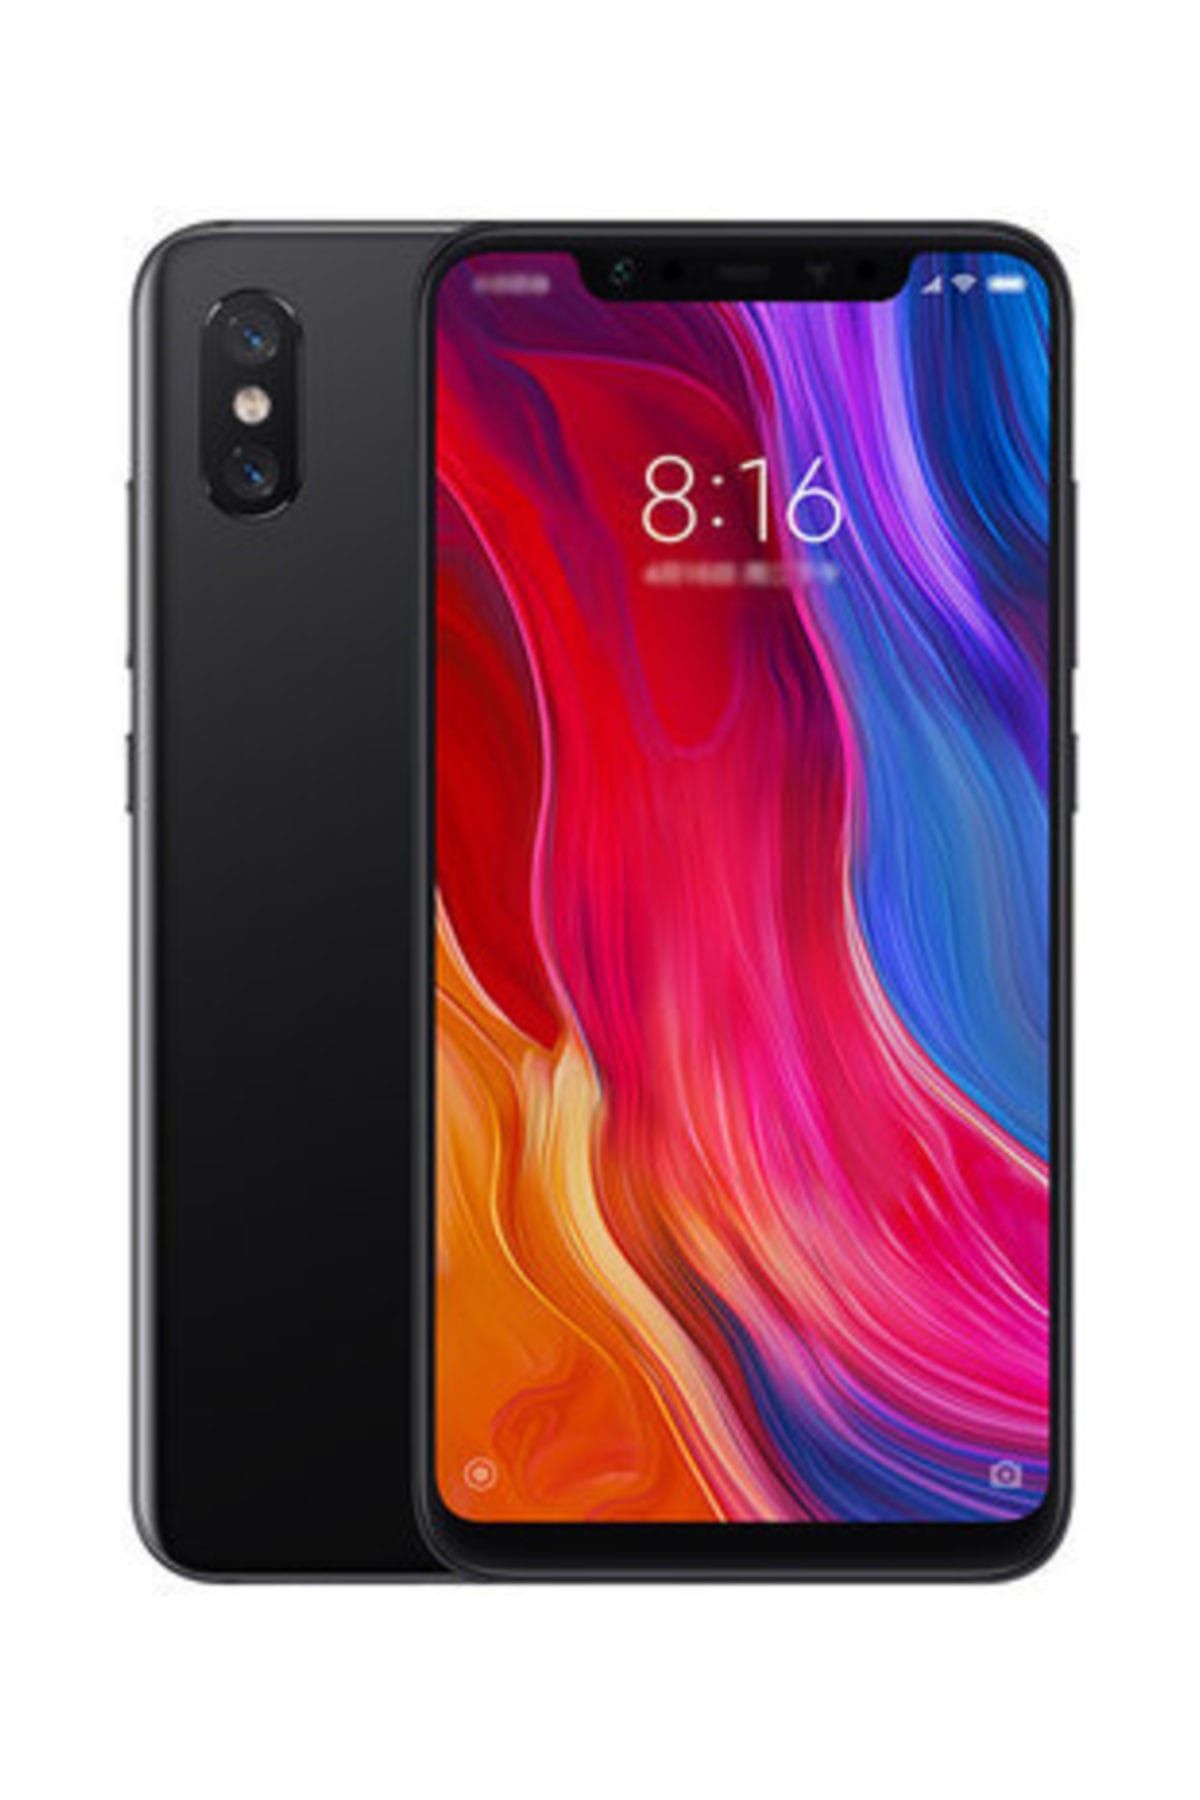 Xiaomi MI 8 128GB BLACK (ÇİFT HAT) CEP TELEFON - İTHALATÇI GARANTİLİ